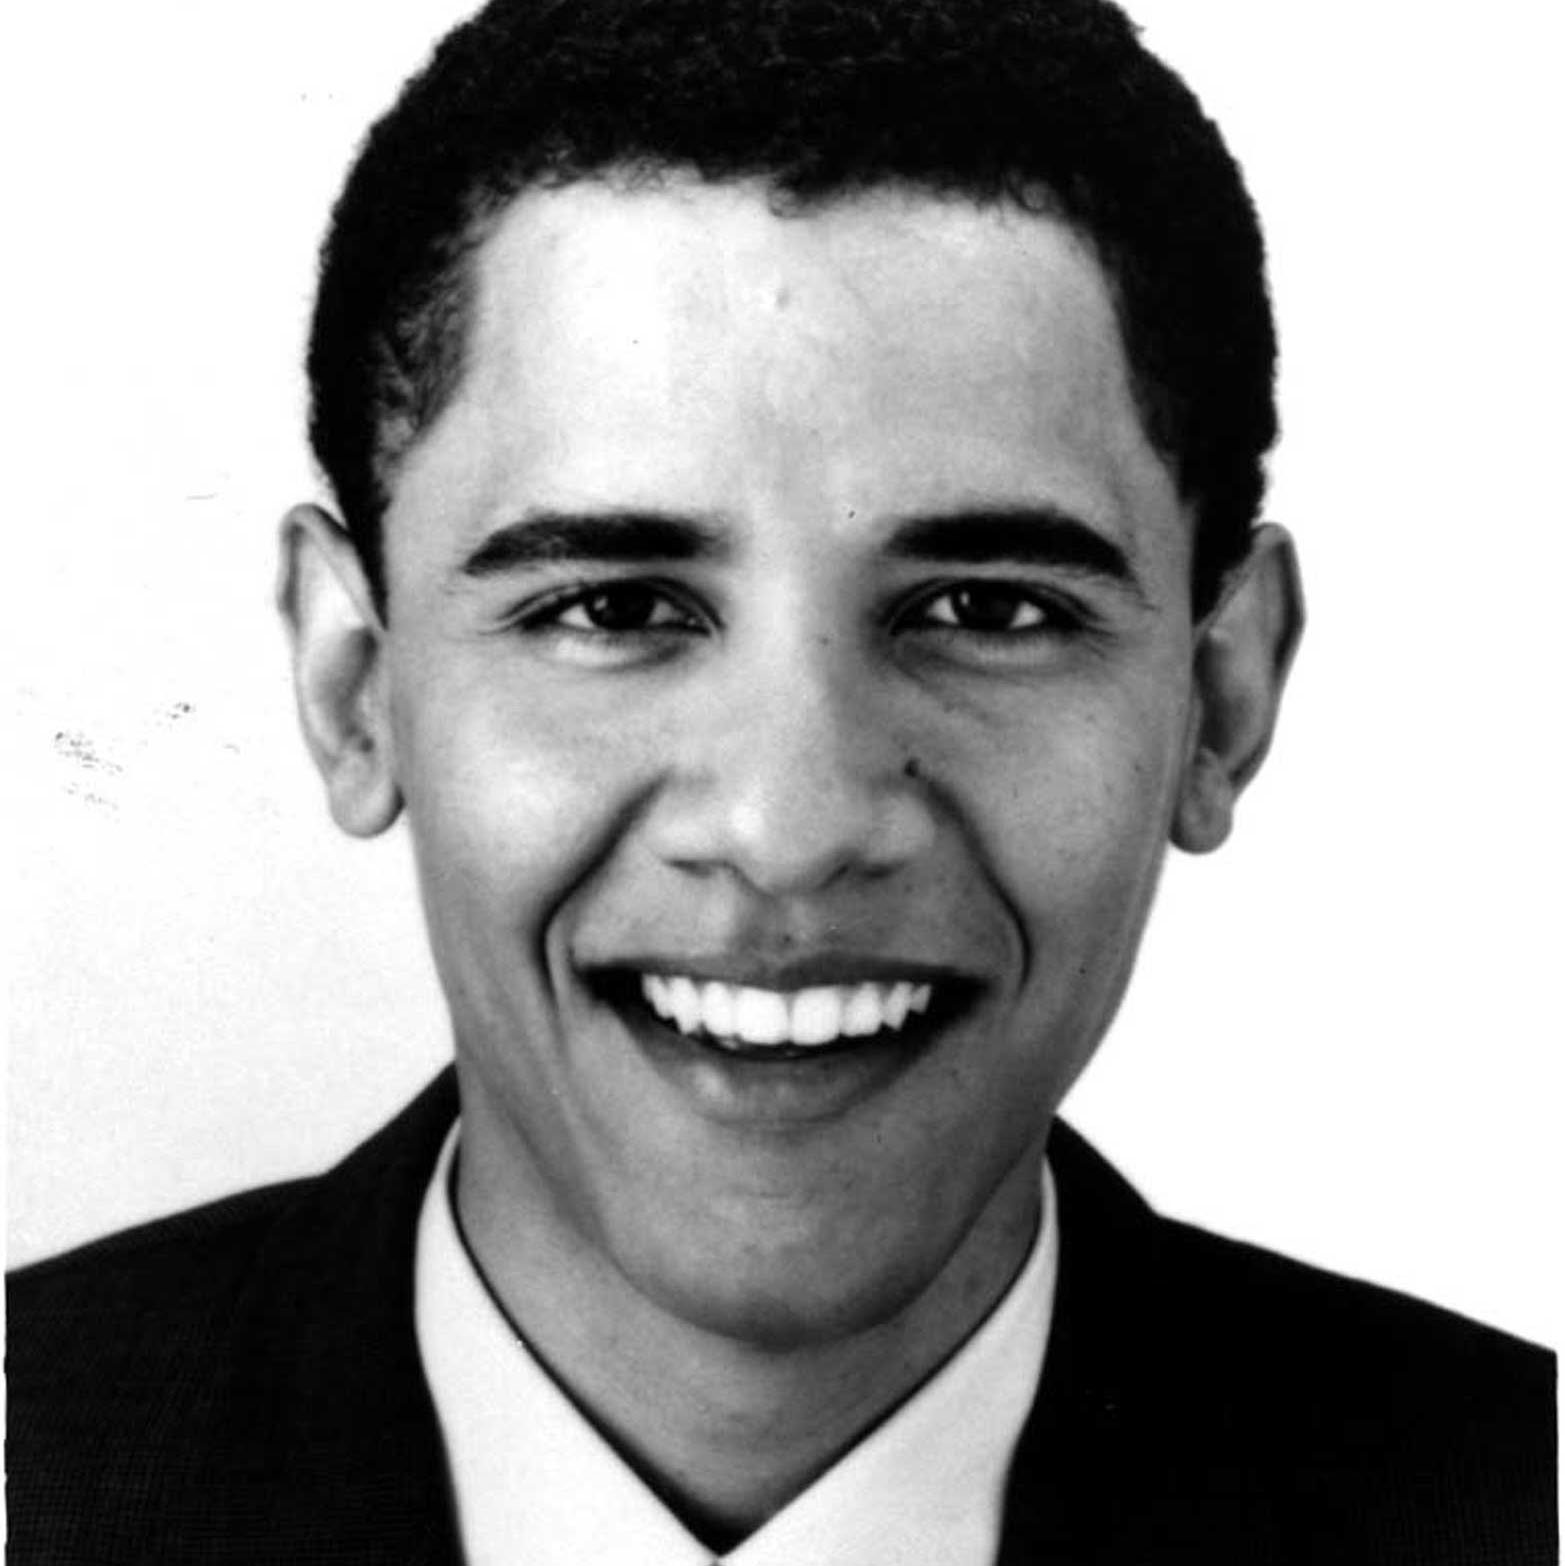 Then-Illinois State Senator Barack Obama, shown in a 1999 file photo.